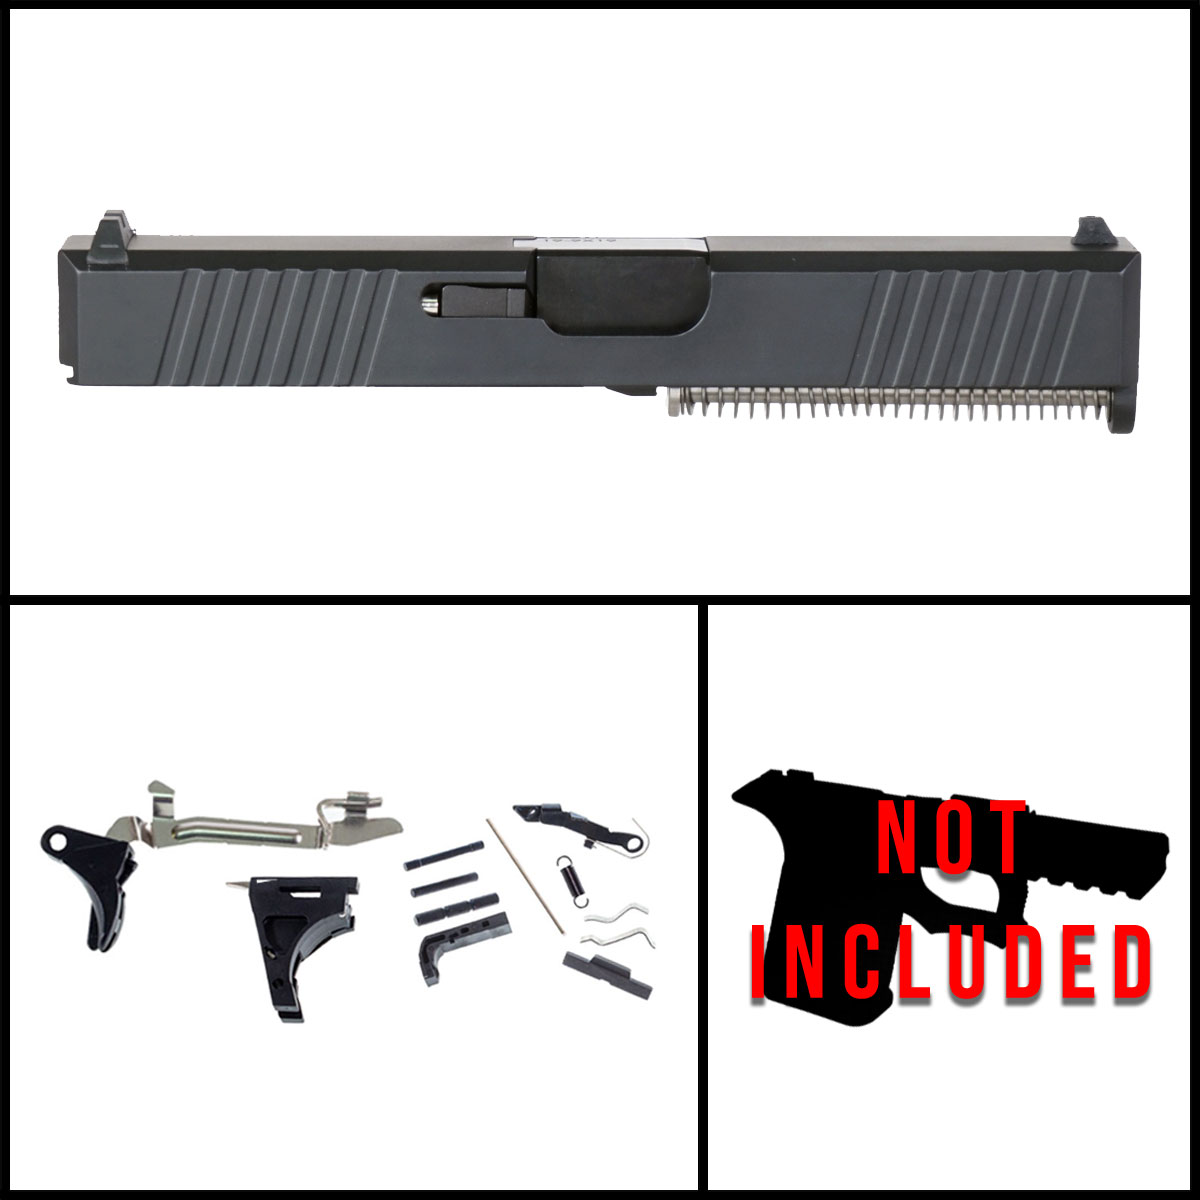 DTT 'Pit Viper' 9mm Full Pistol Build Kit (Everything Minus Frame) - Glock 19 Gen 1-3 Compatible